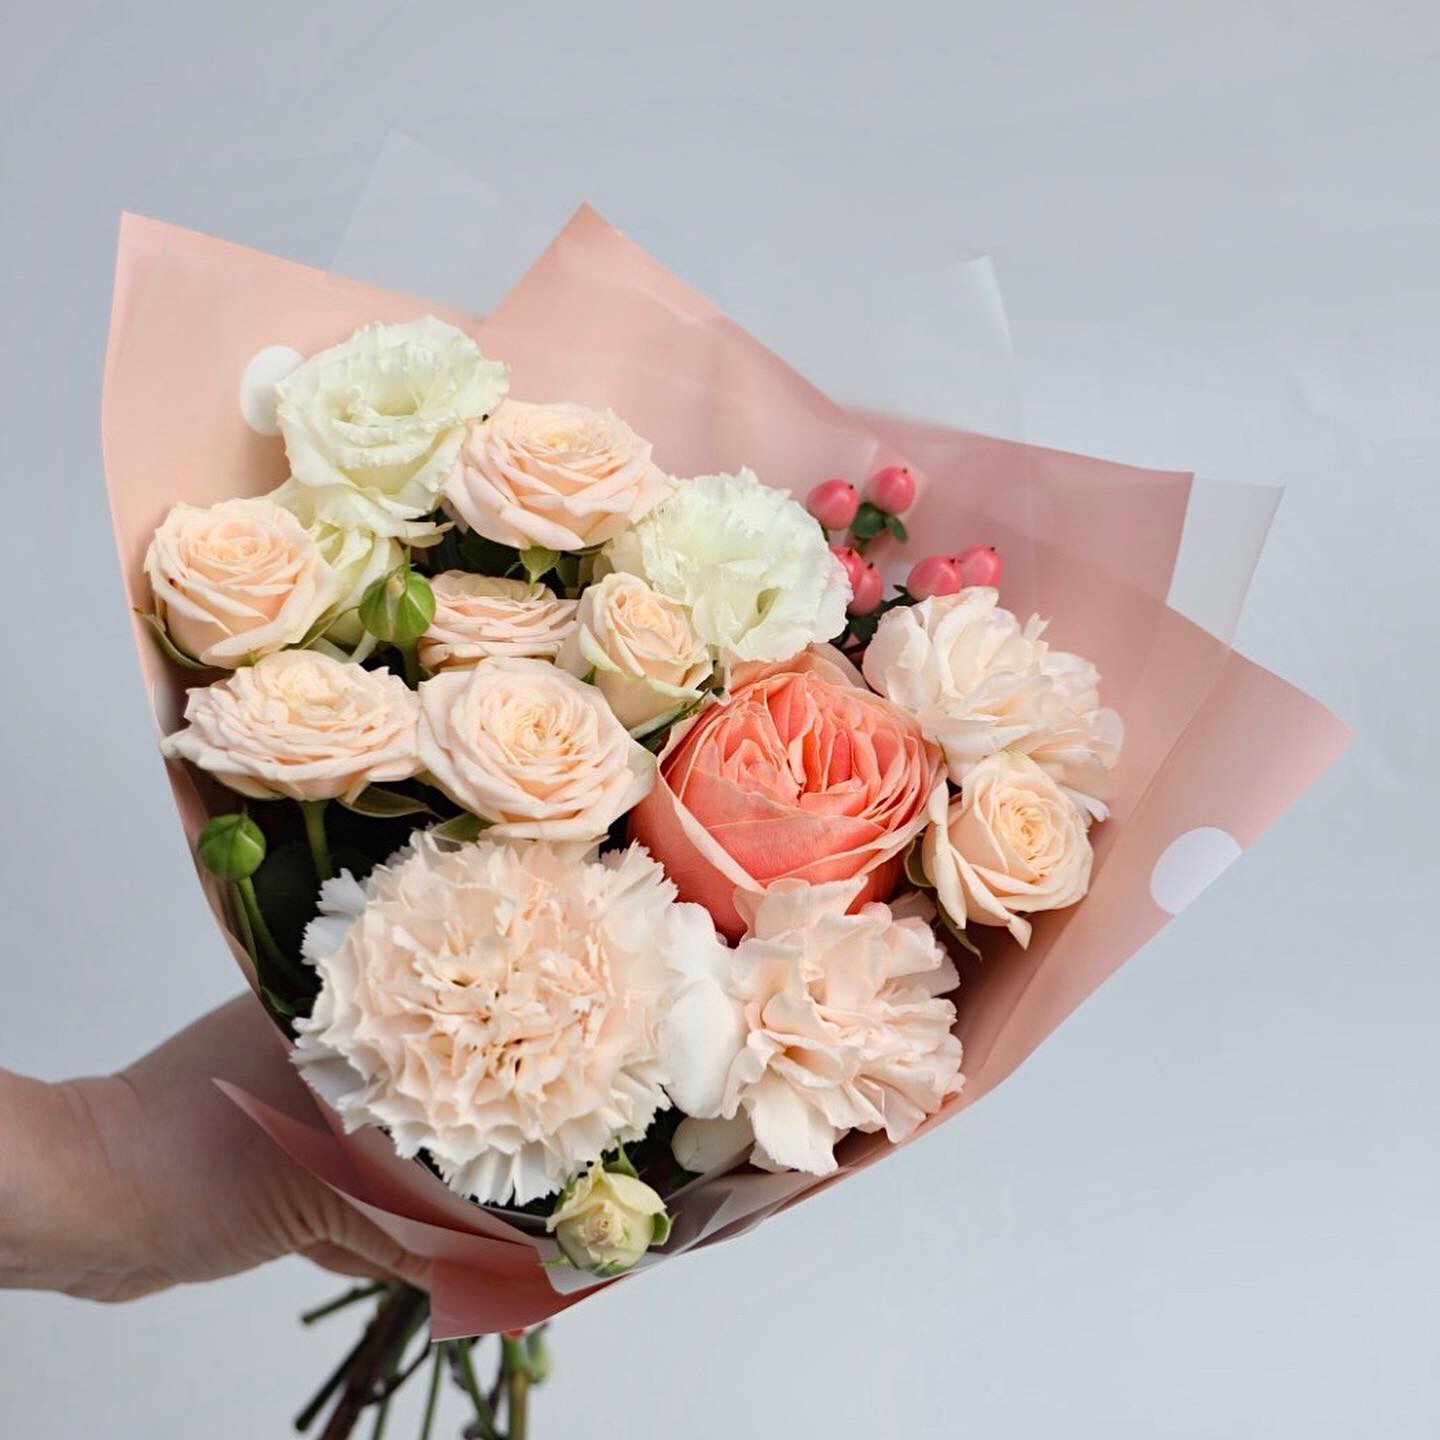 Купить букет / цветы Букет в школу в Москве с доставкой по отличной цене